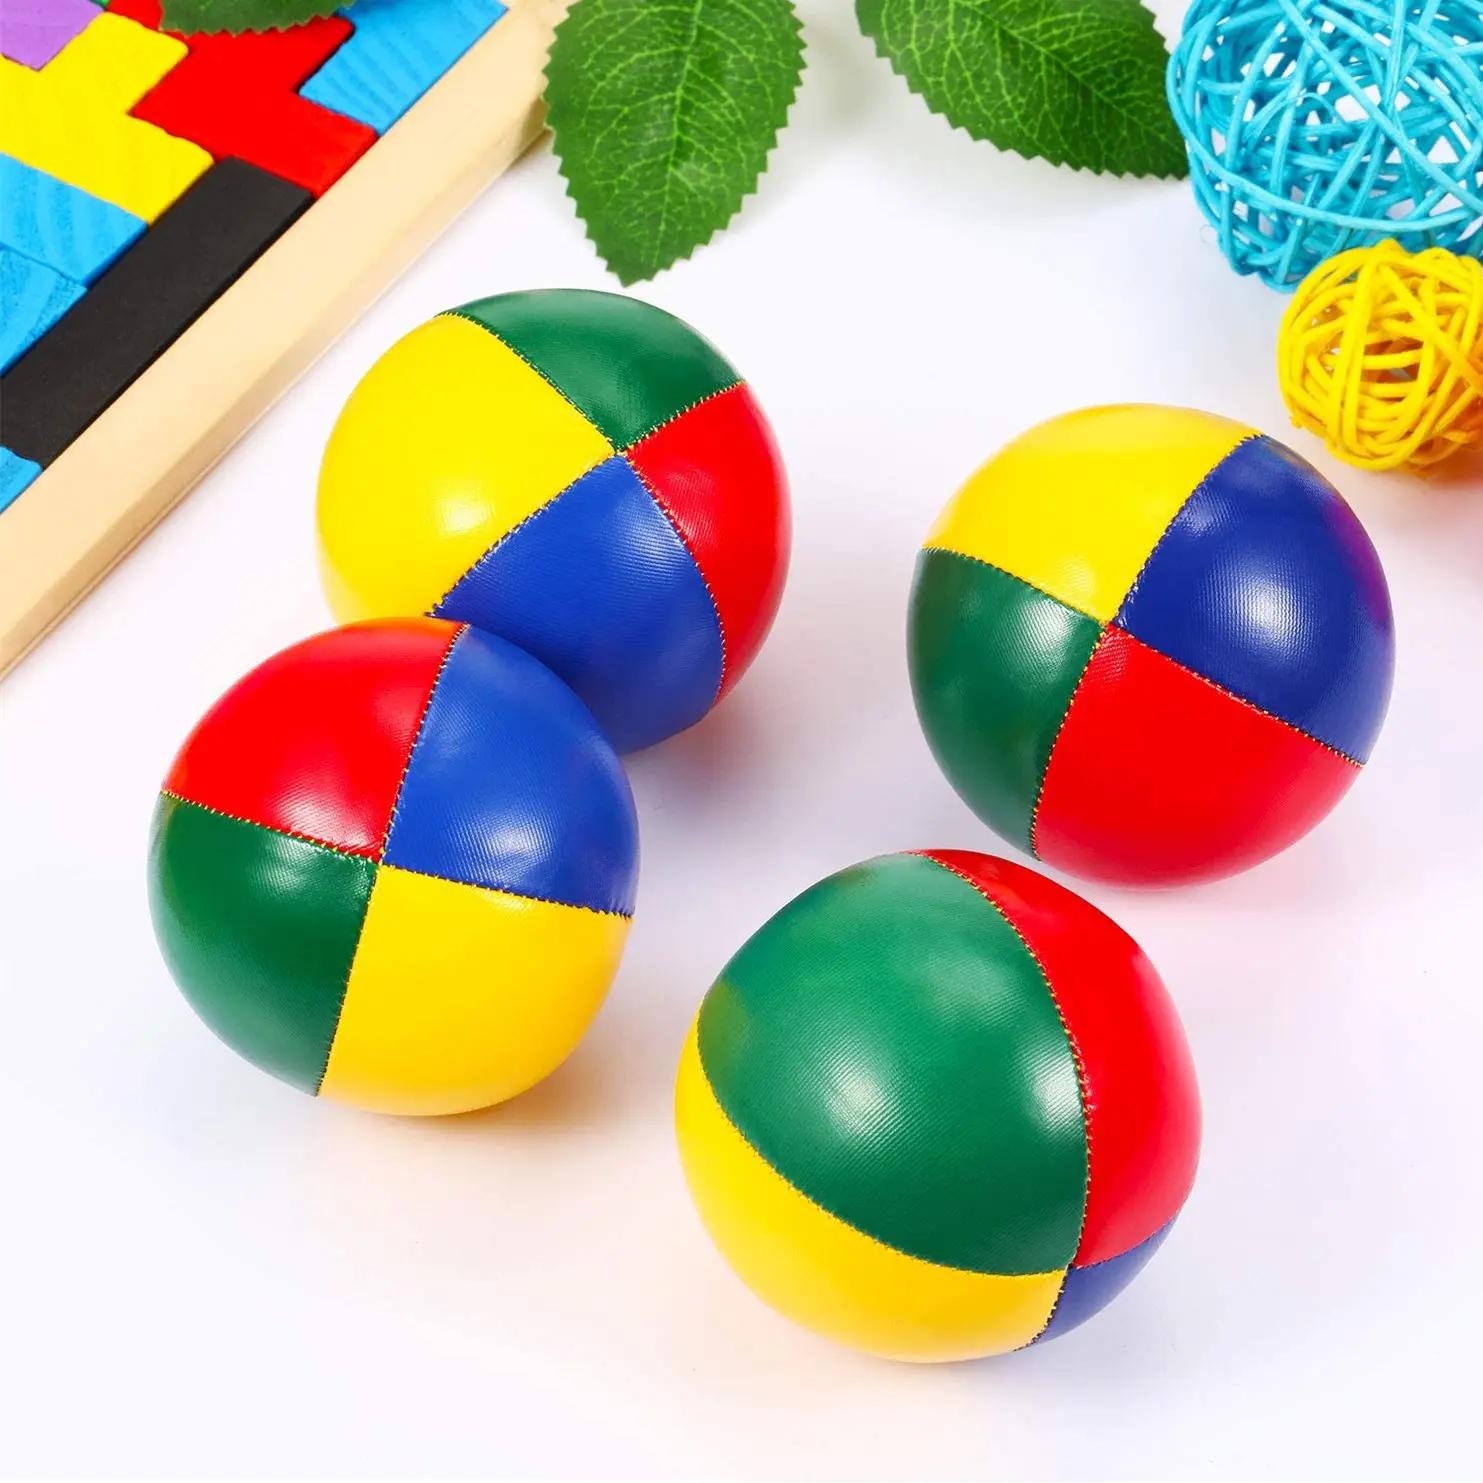 Yeni tasarım dayanıklı yumuşak Pu deri hokkabazlık topu özel renkli paketlenmiş hokkabazlık topları Set yetişkinler için eğlenceli oyunlar çocuklar